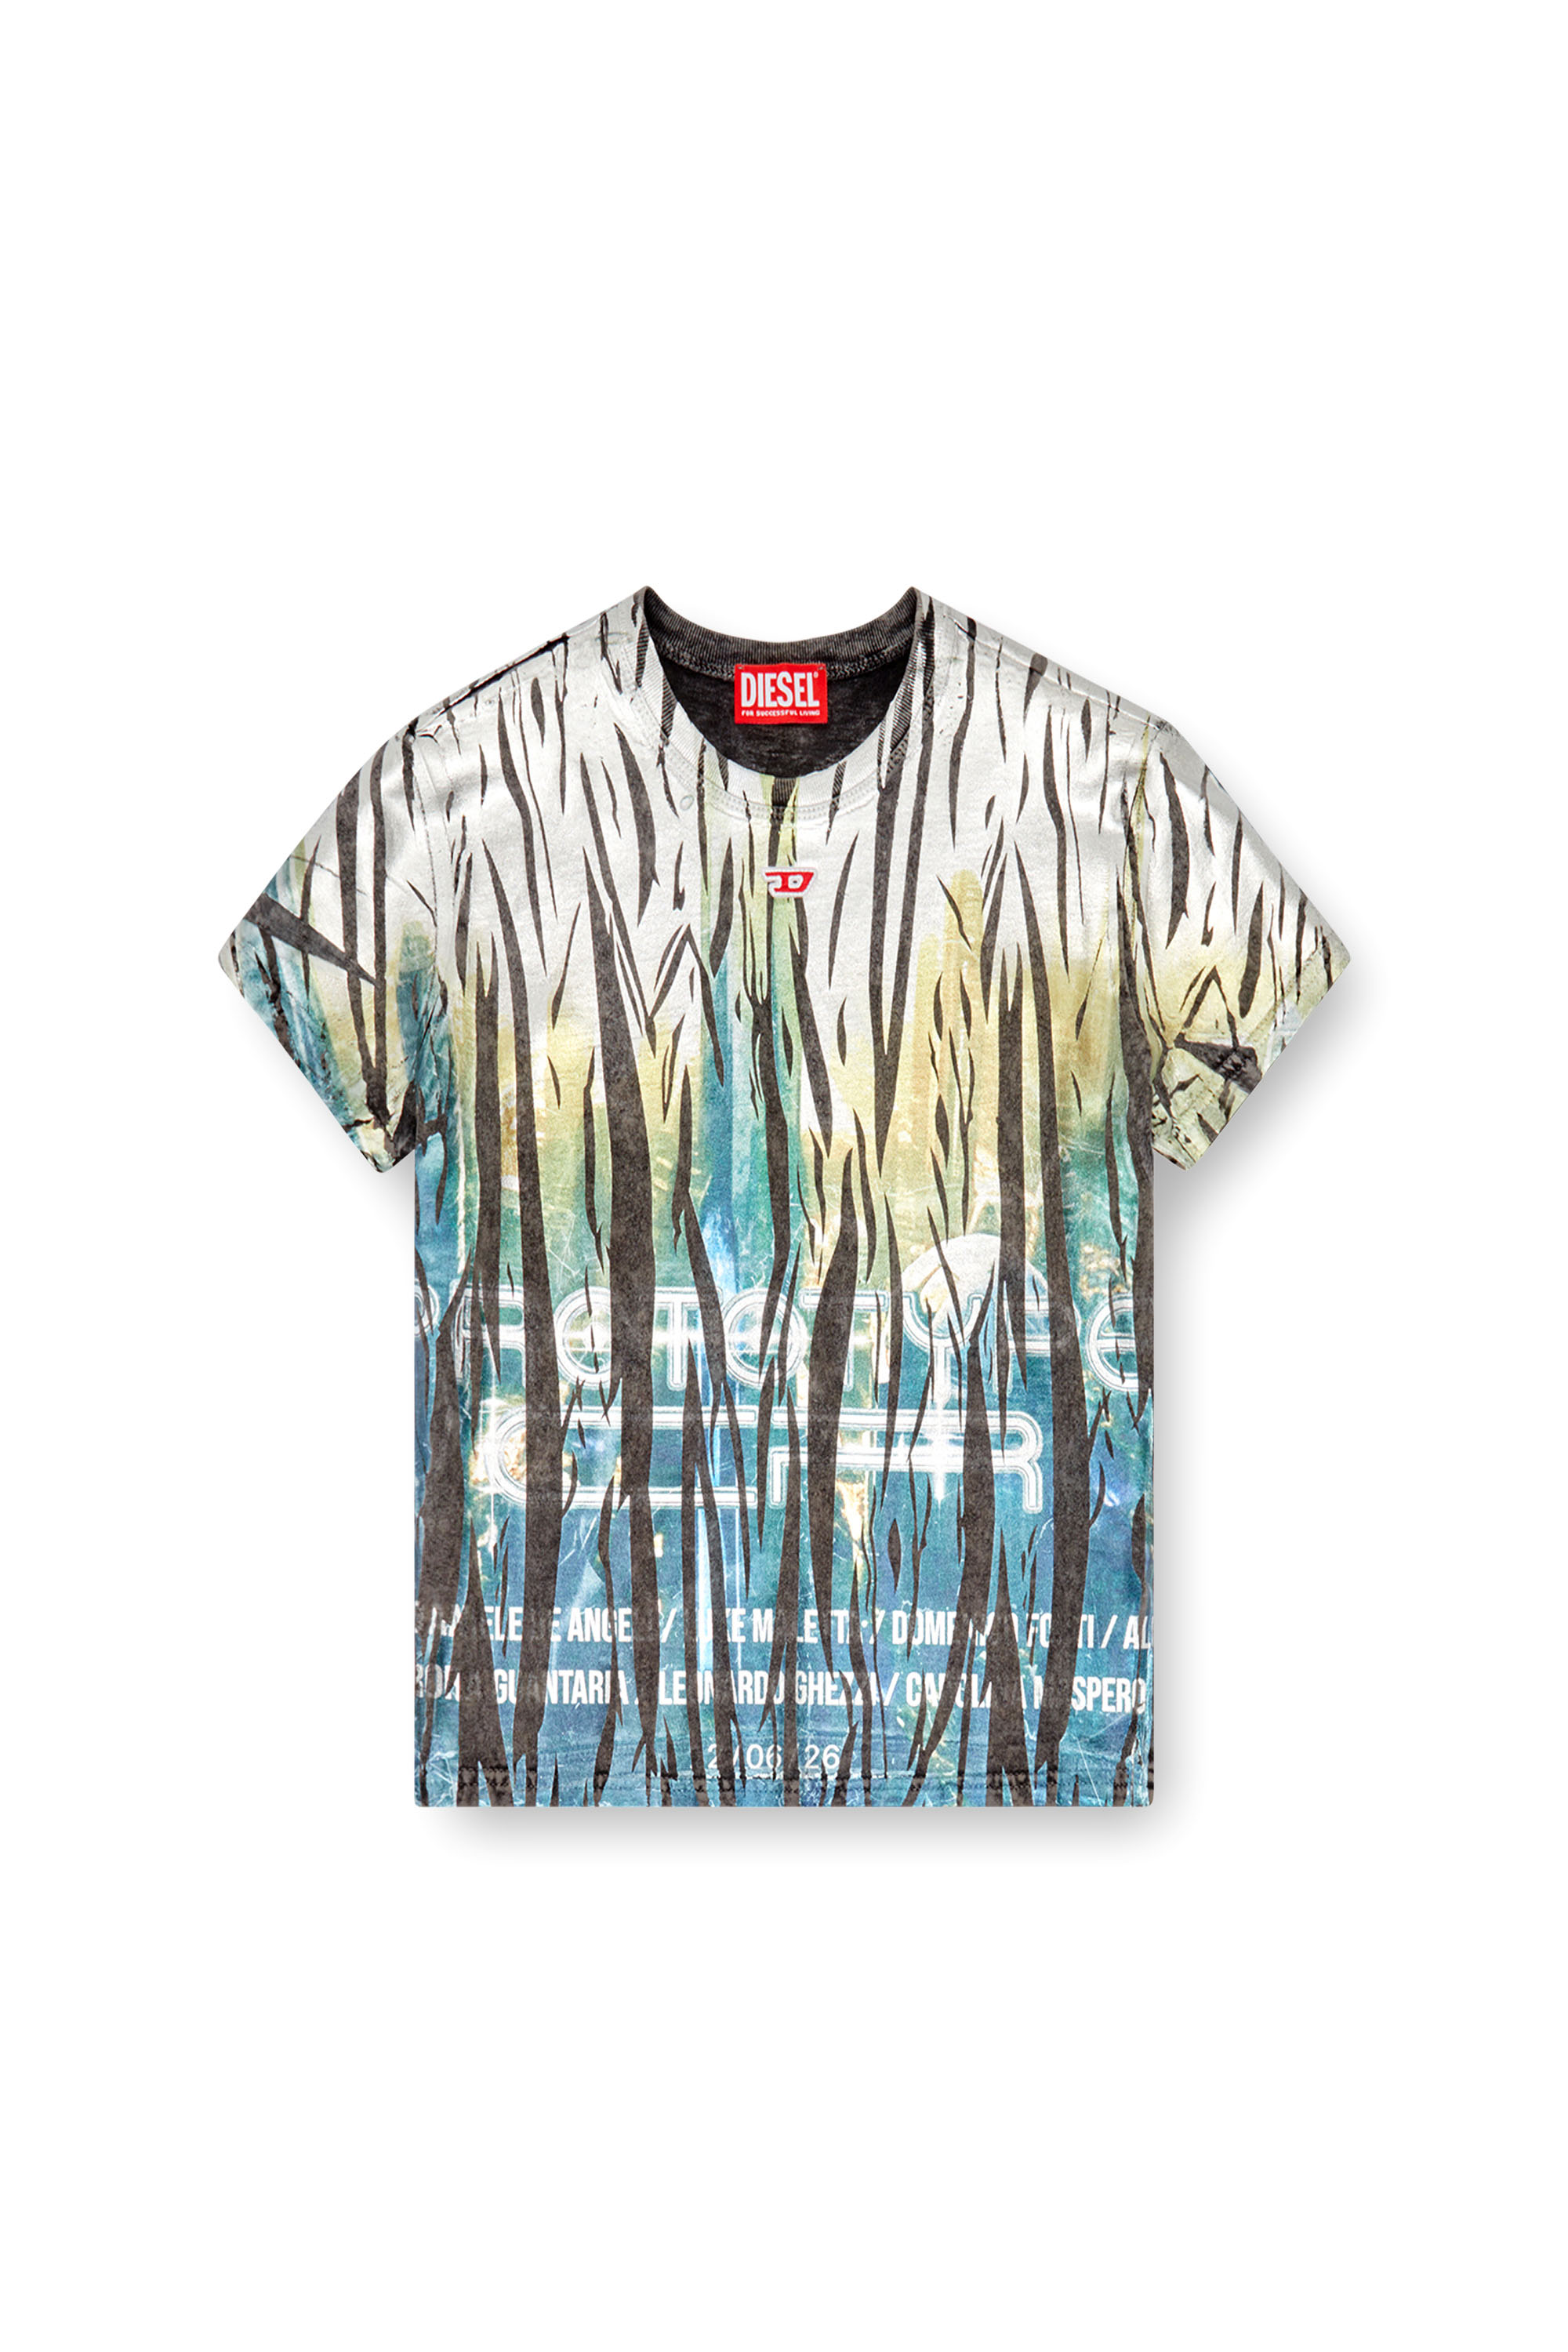 Diesel - T-UNCUTIE-LONG-FOIL, Donna T-shirt con trattamento laminato stropicciato in Multicolor - Image 3